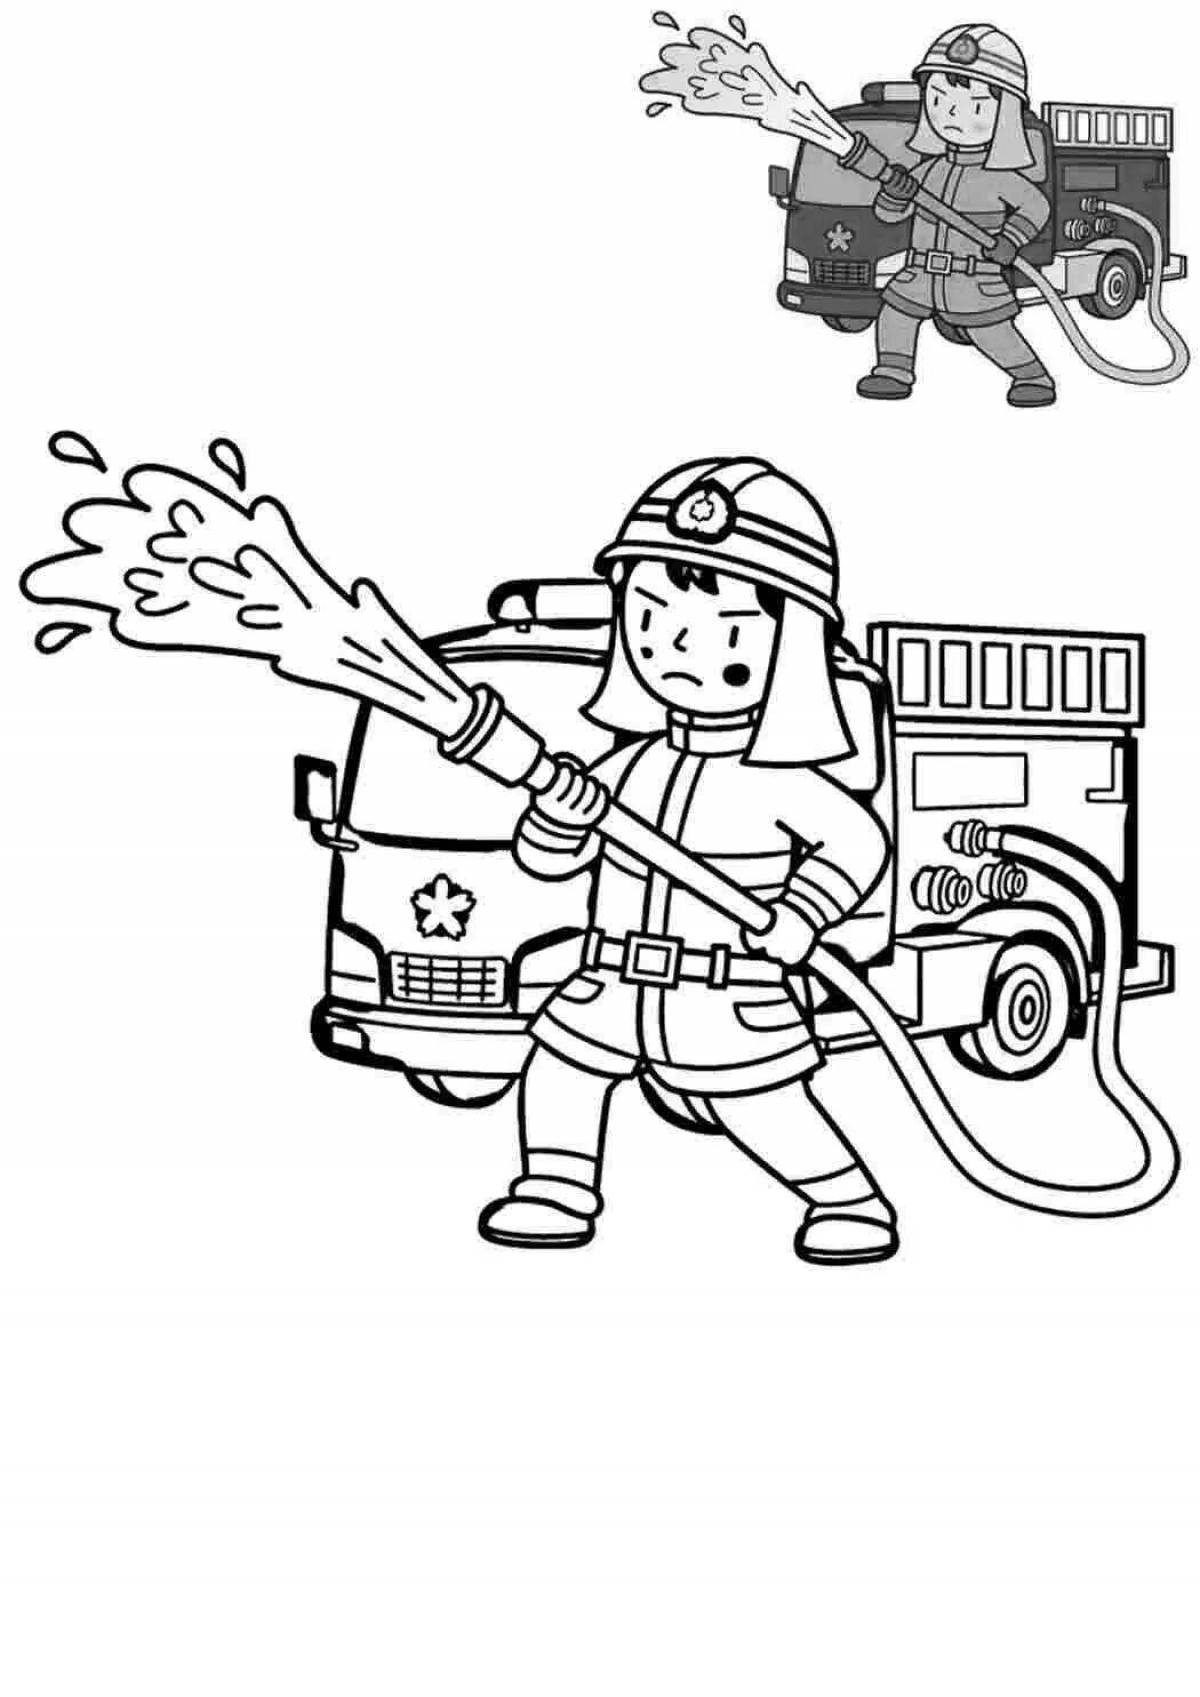 Пожарник раскраска для детей